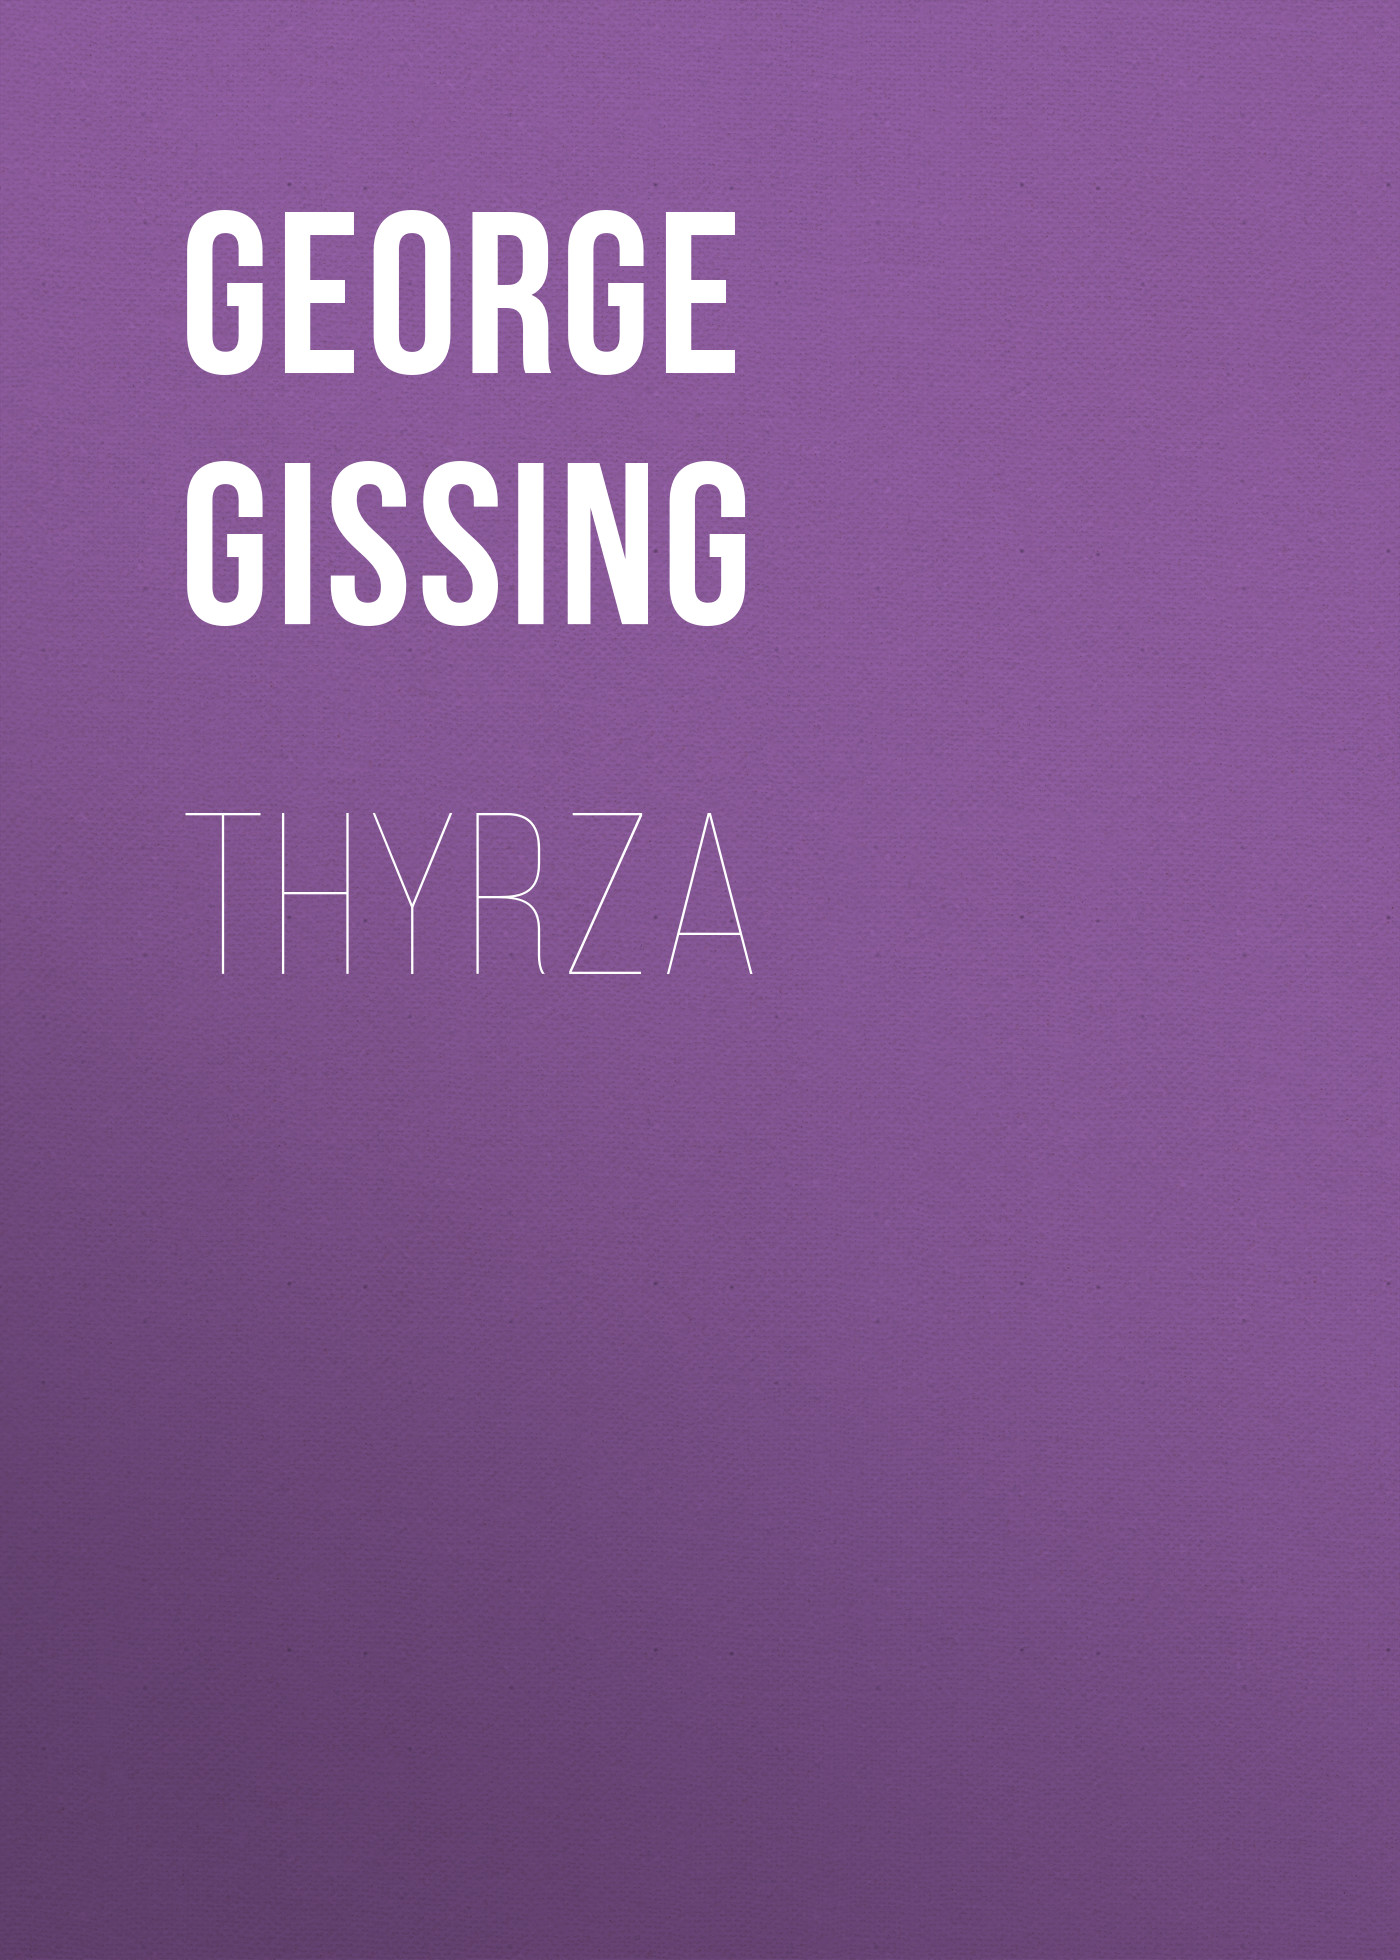 Книга Thyrza из серии , созданная George Gissing, может относится к жанру Зарубежная классика, Литература 19 века, Зарубежная старинная литература. Стоимость электронной книги Thyrza с идентификатором 38307057 составляет 0 руб.